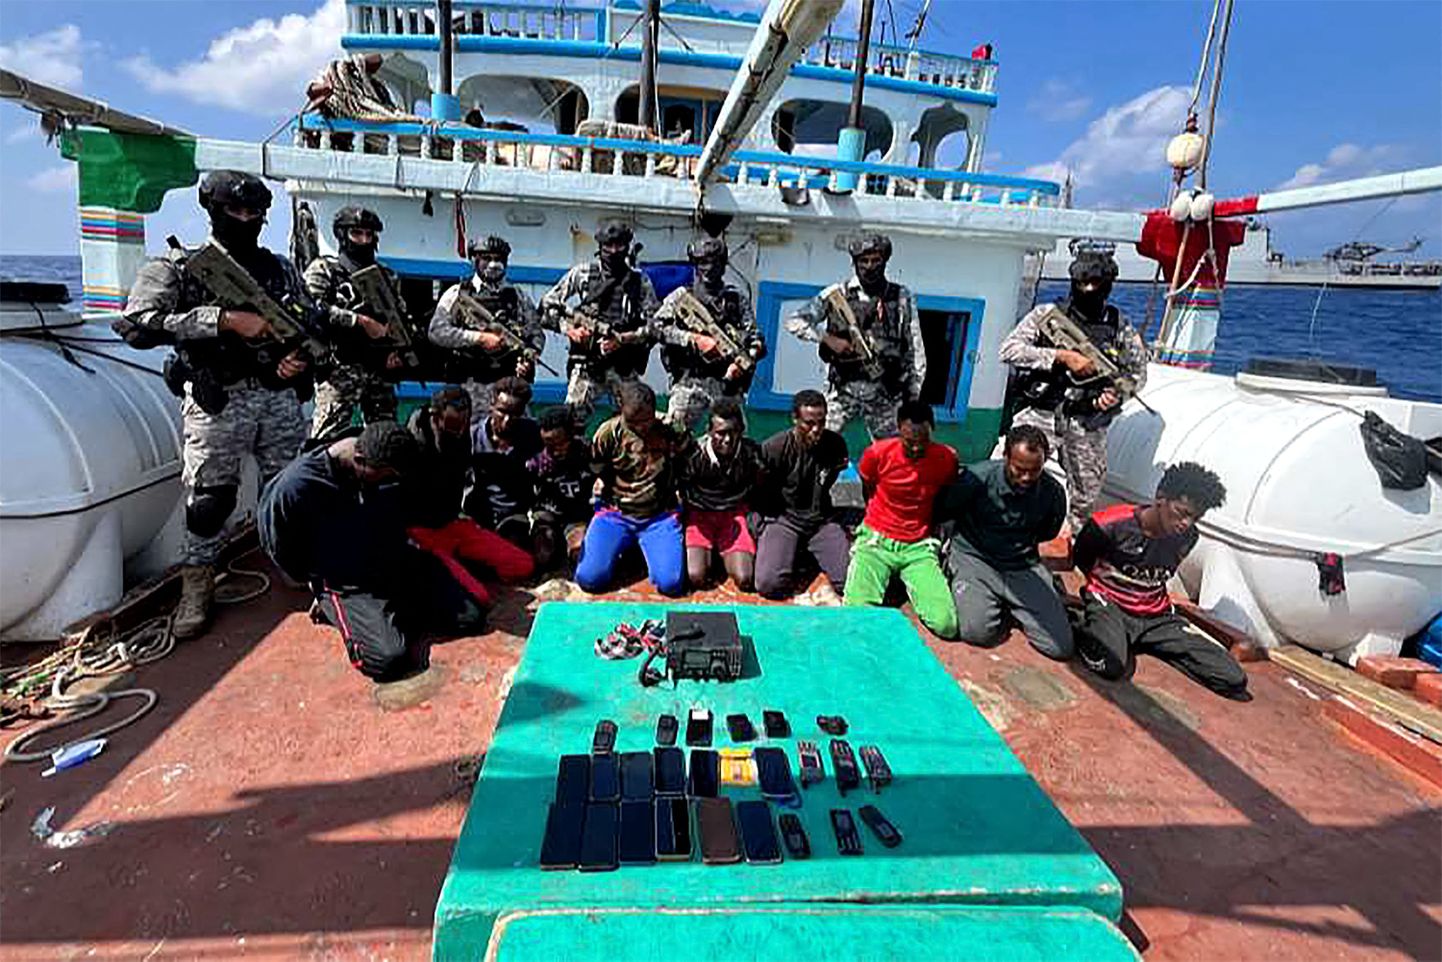 India merevägi vabastas 30. jaanuaril Iraani kalalaeva, mis oli varem Somaalia piraatide poolt hõivatud. Piraadid võeti kinni ning 19 Pakistani päritolu meeskonnaliiget vabastati.